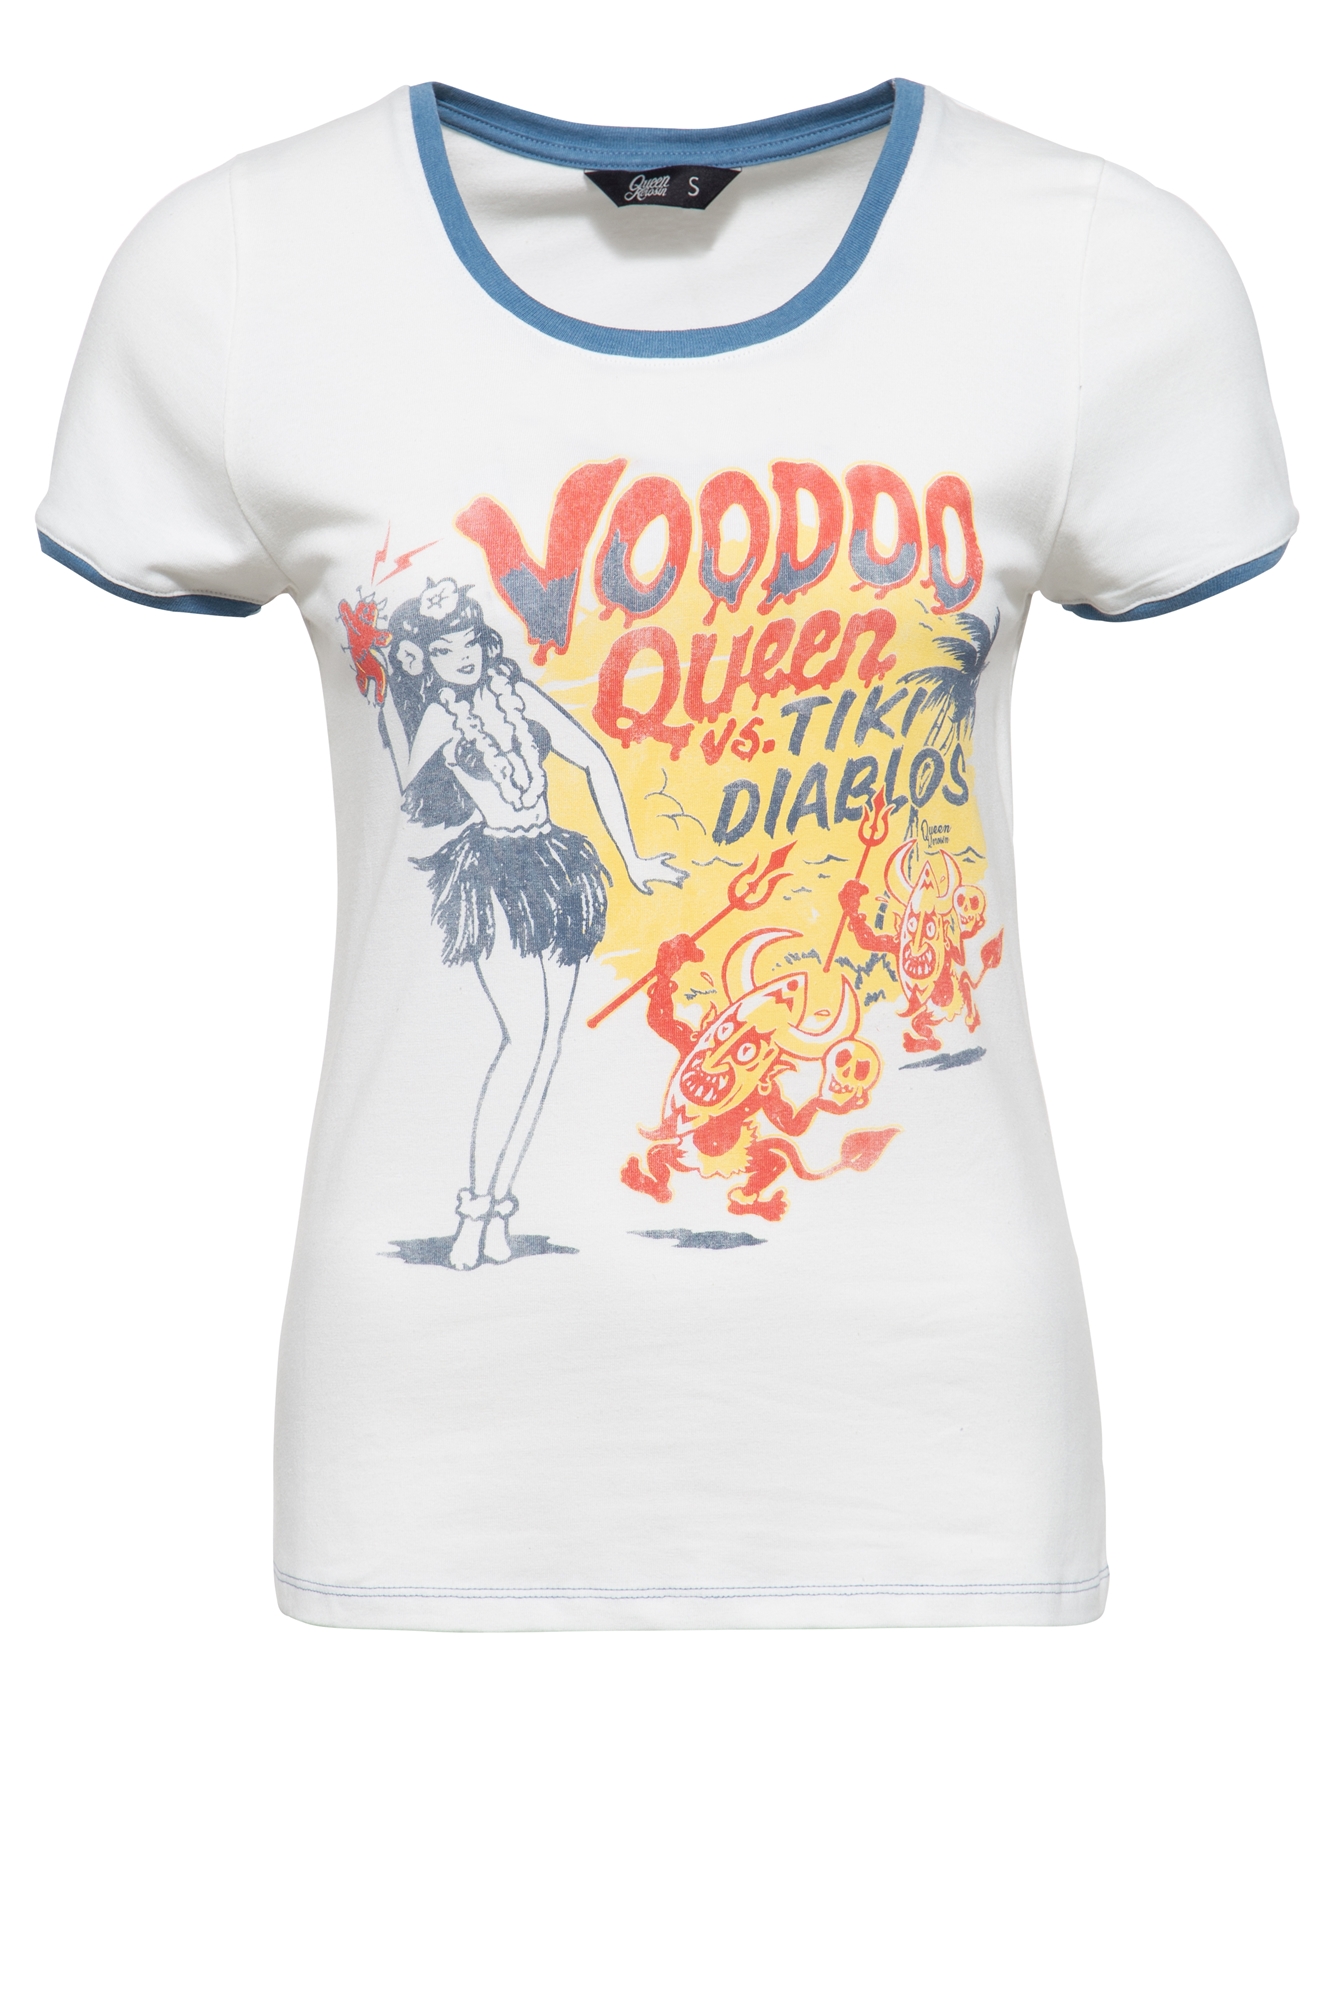 Queen Kerosin T-Shirt - Voodoo Queen S